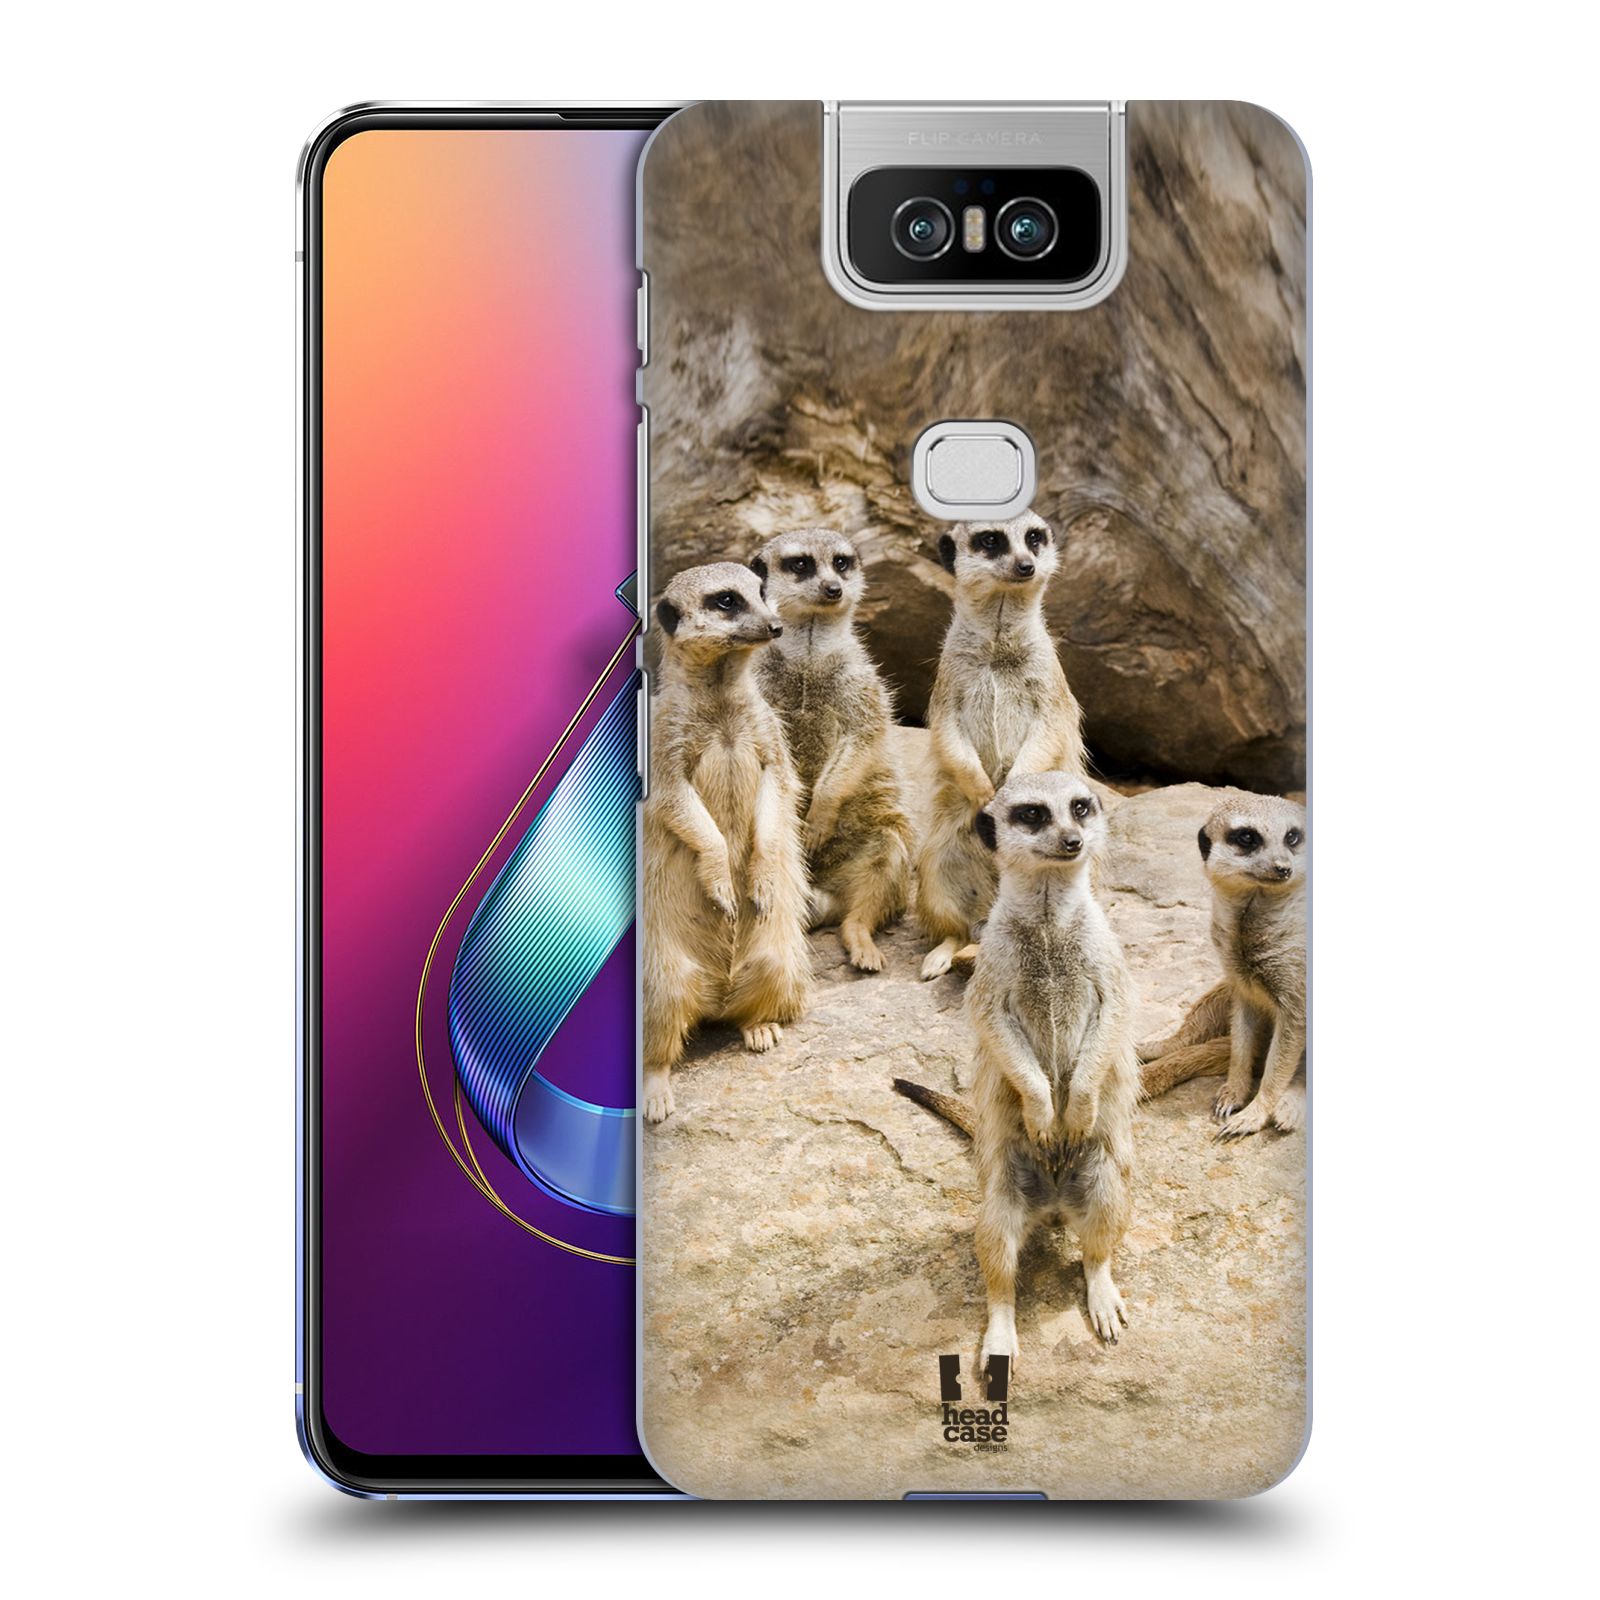 Zadní obal pro mobil Asus Zenfone 6 ZS630KL - HEAD CASE - Svět zvířat roztomilé surikaty